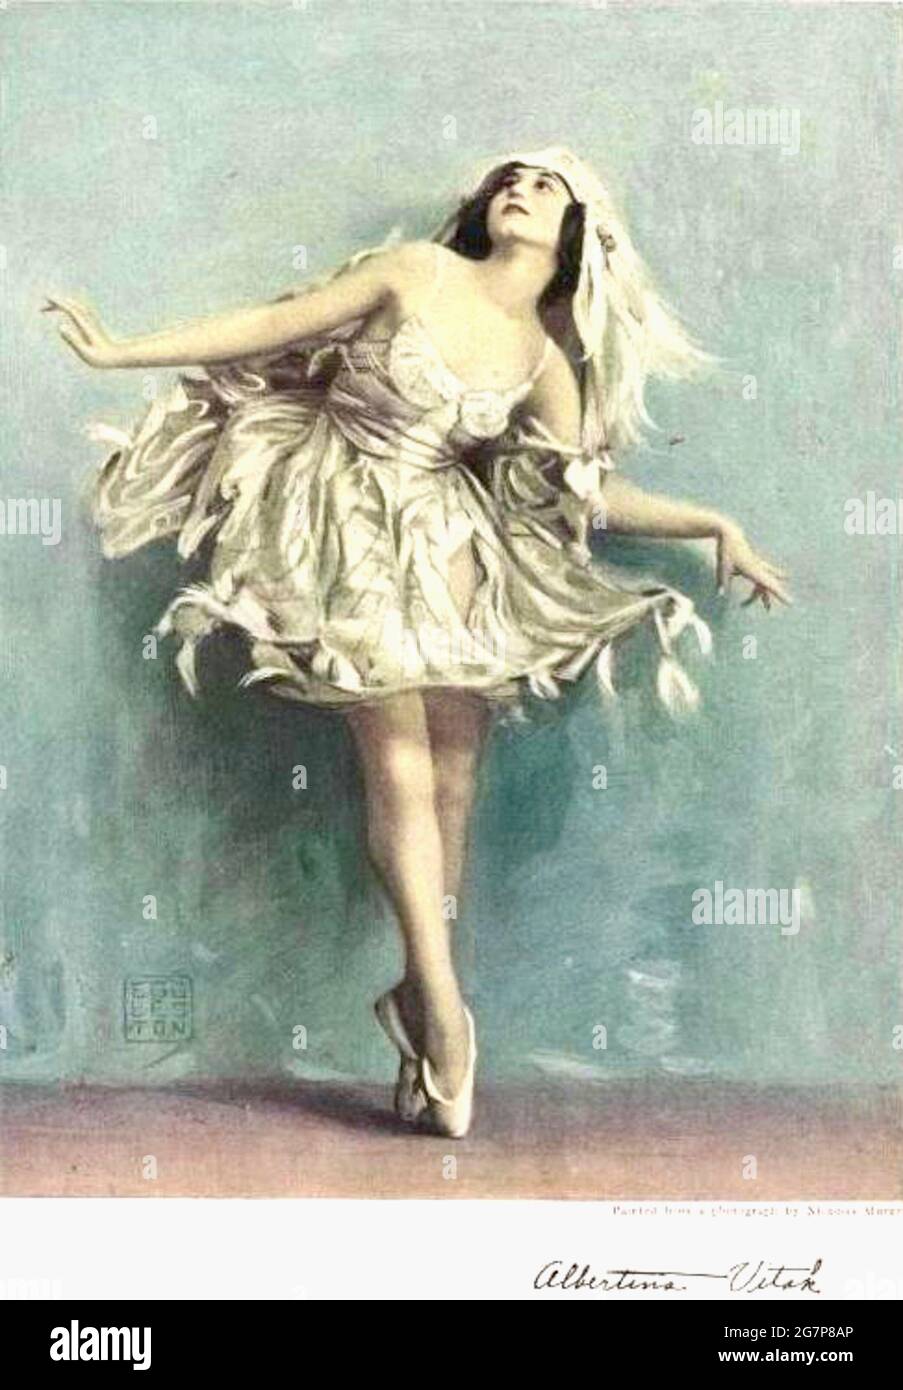 Historic Photo Print Ziegfeld Follies Girl Albertina Vitak 